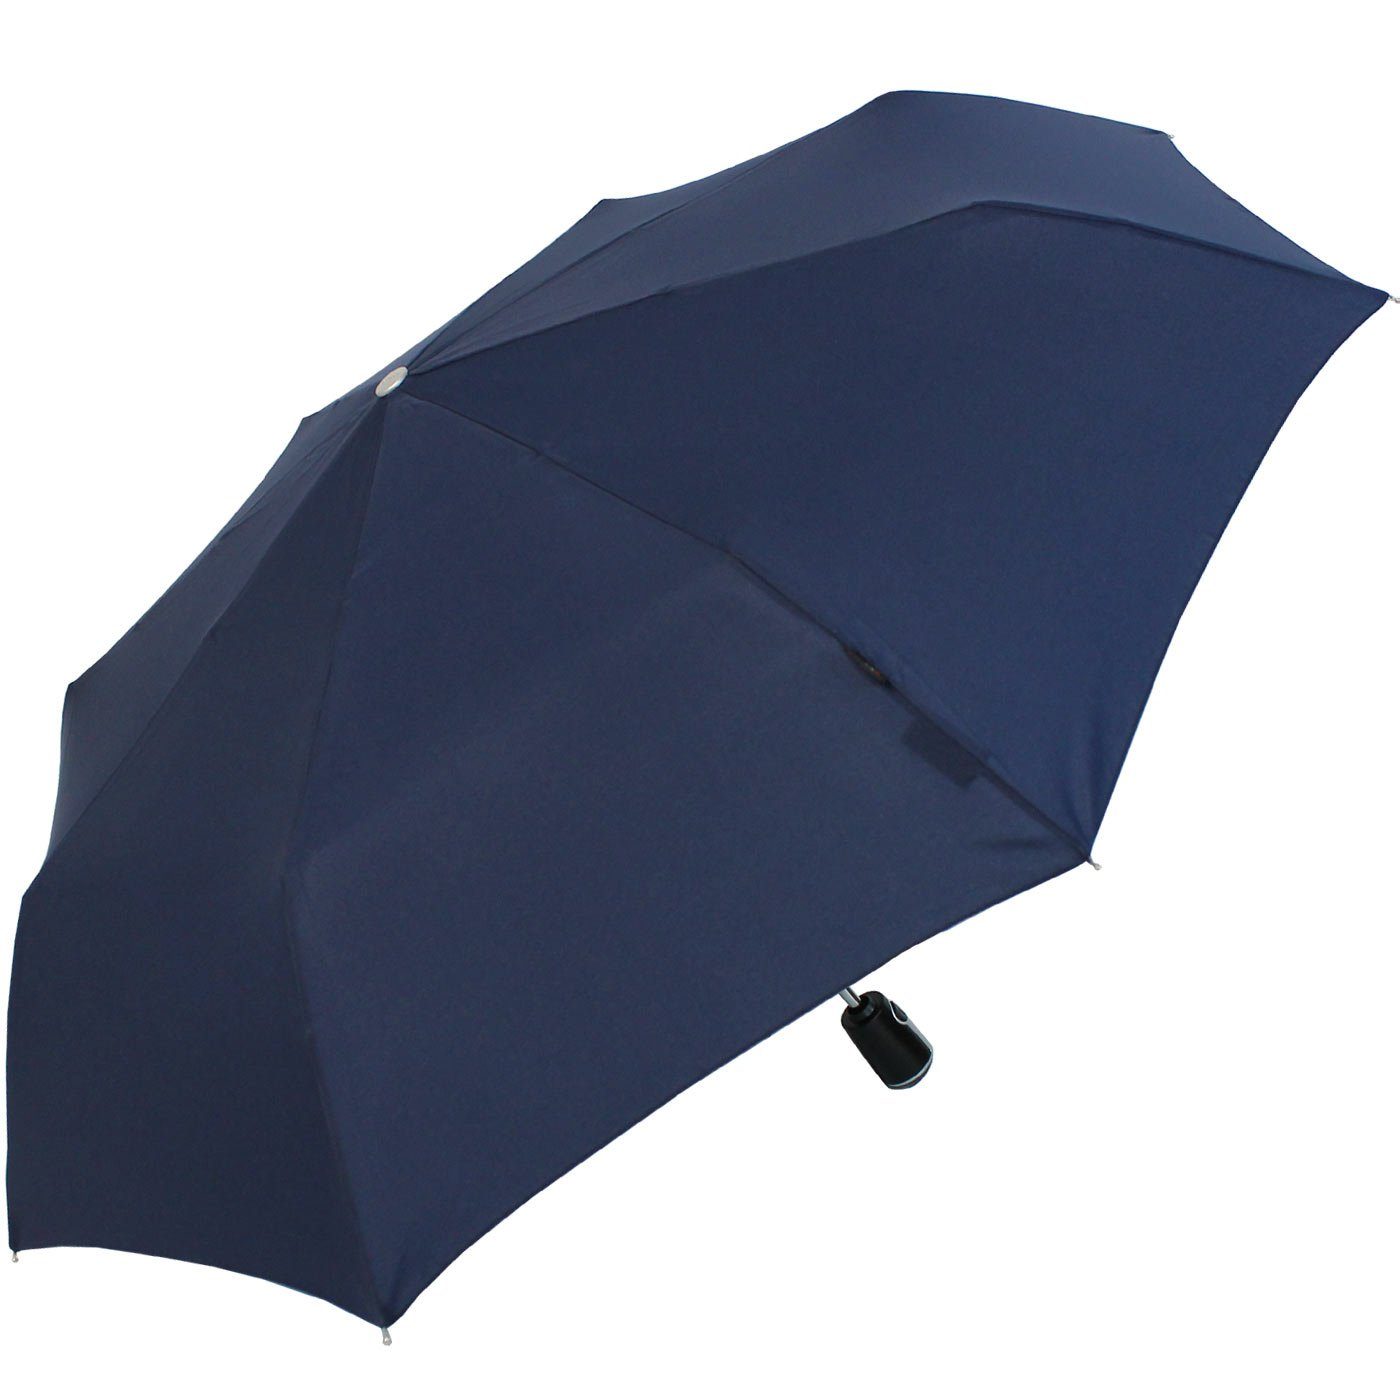 große, stabile Large der navy-blau Auf-Zu-Automatik, mit Knirps® Duomatic Begleiter Taschenregenschirm